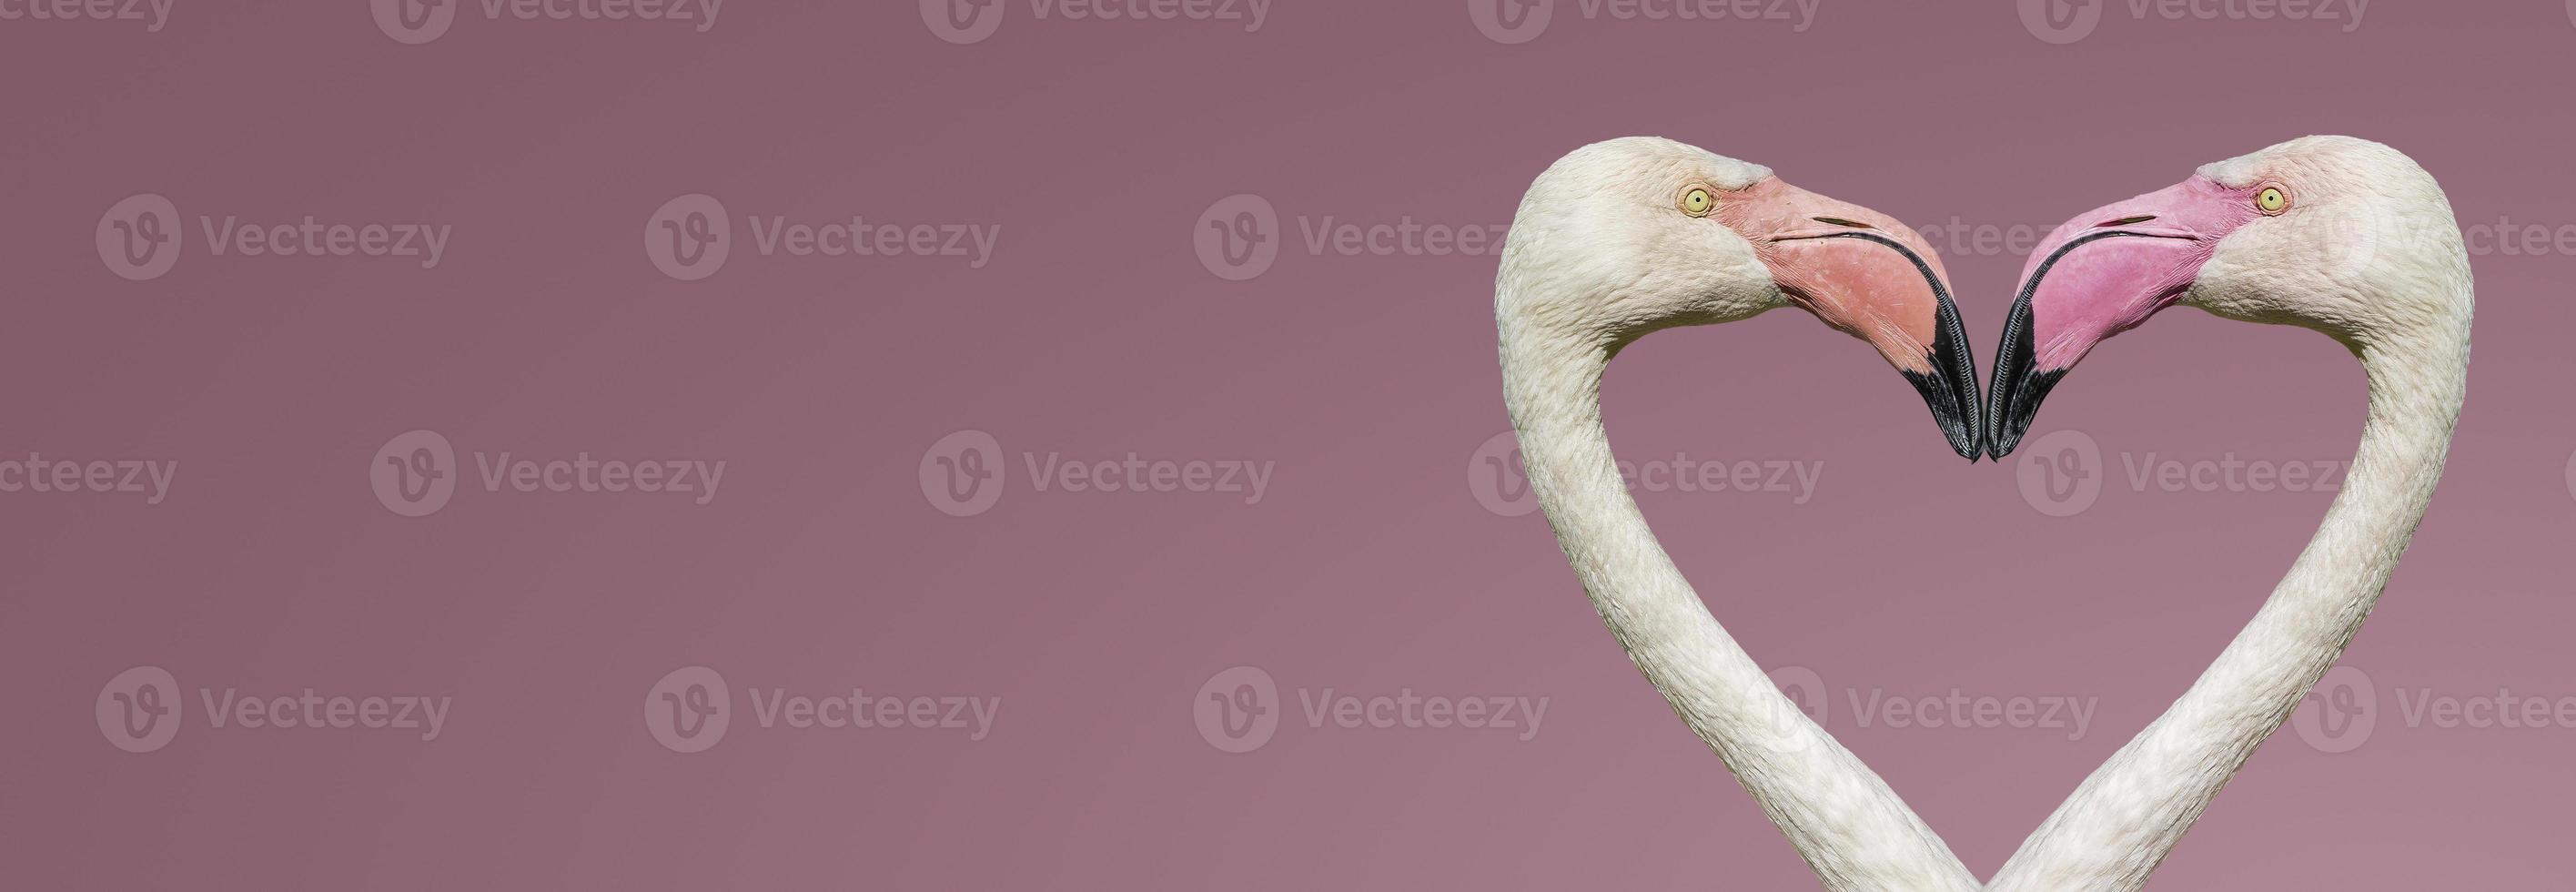 Banner mit zwei rosigen Flamingos, die eine Herzform mit ihren Köpfen und Hälsen bilden, isoliert auf glattem hellrosa oder rosigem Hintergrund mit Kopienraum für Text, Nahaufnahme, Details. Liebe und Glamour-Konzept foto